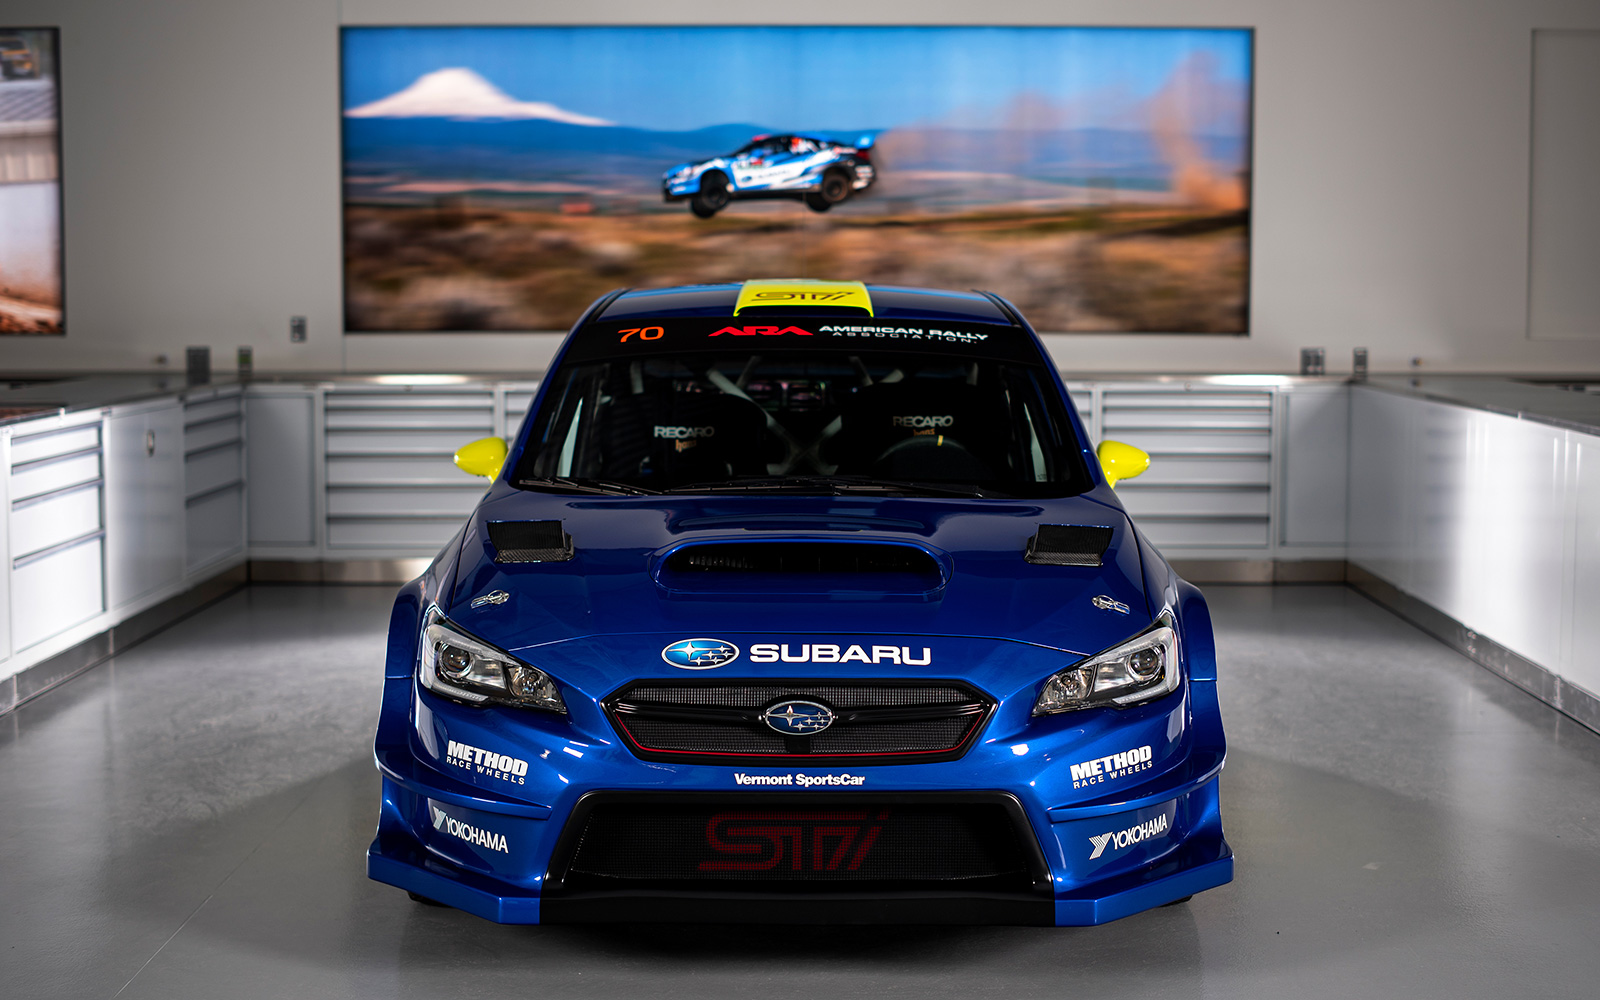 Recaro Subaru Motorsports USA Rallycross 2020 pasmag BH8 5334 W